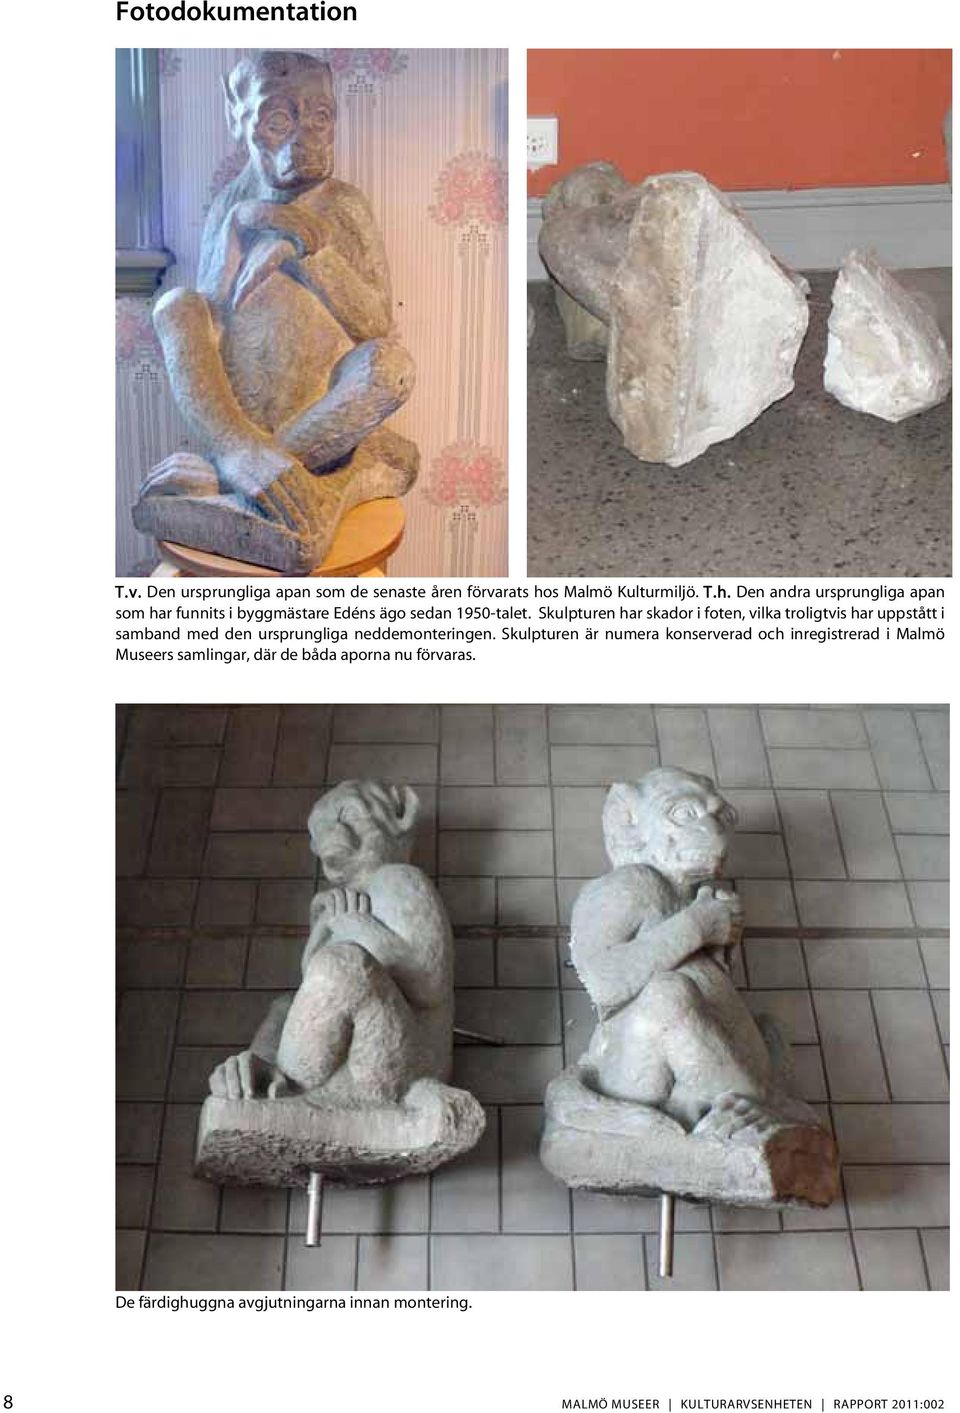 Skulpturen har skador i foten, vilka troligtvis har uppstått i samband med den ursprungliga neddemonteringen.